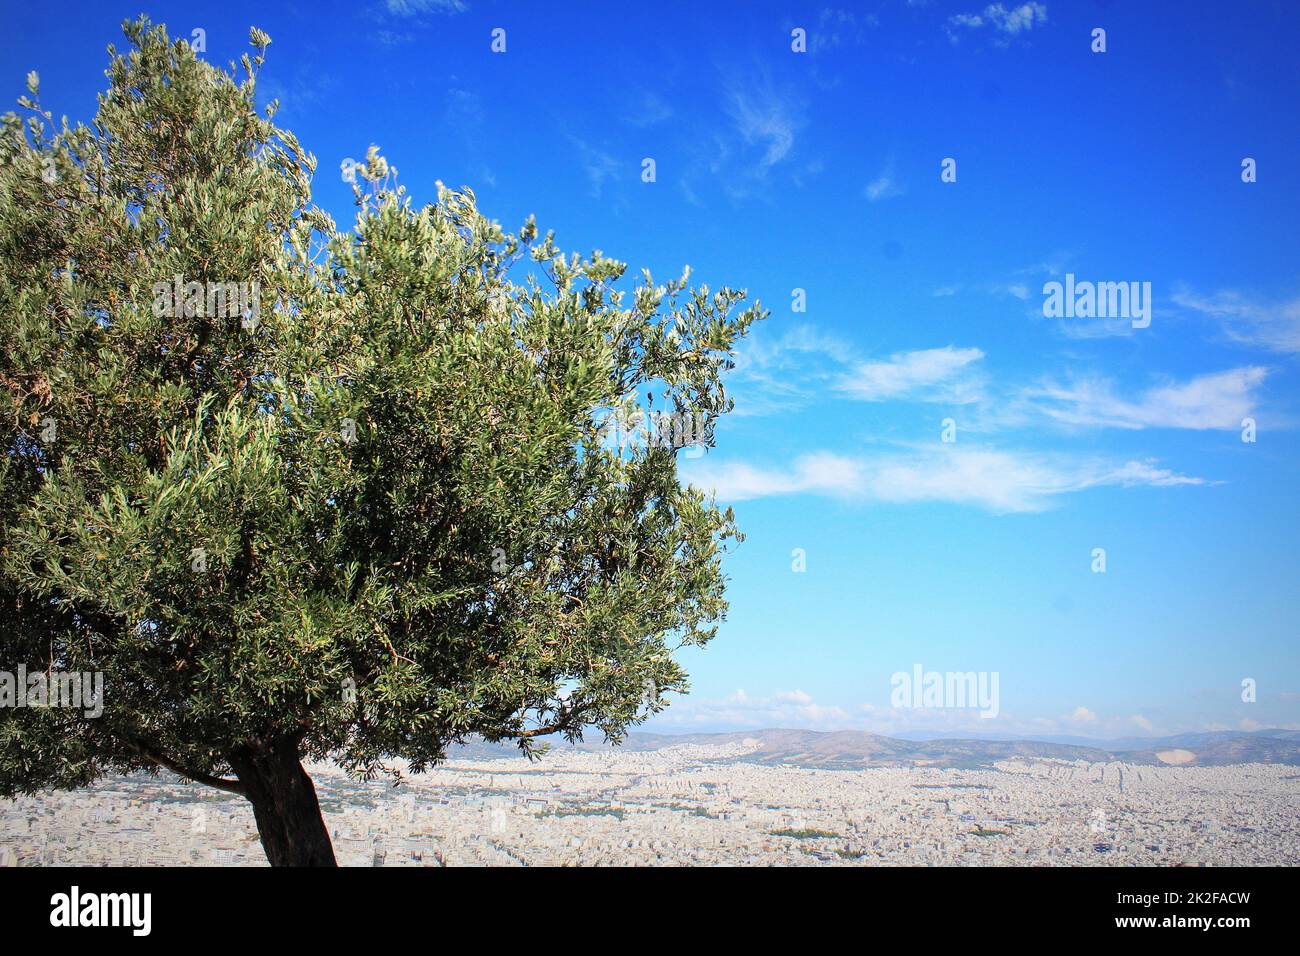 Der Olivenbaum - Geschenk des weiblichen gottes Athene und Symbol der Stadt Athen - auf dem Hügel Lycavittos Stockfoto